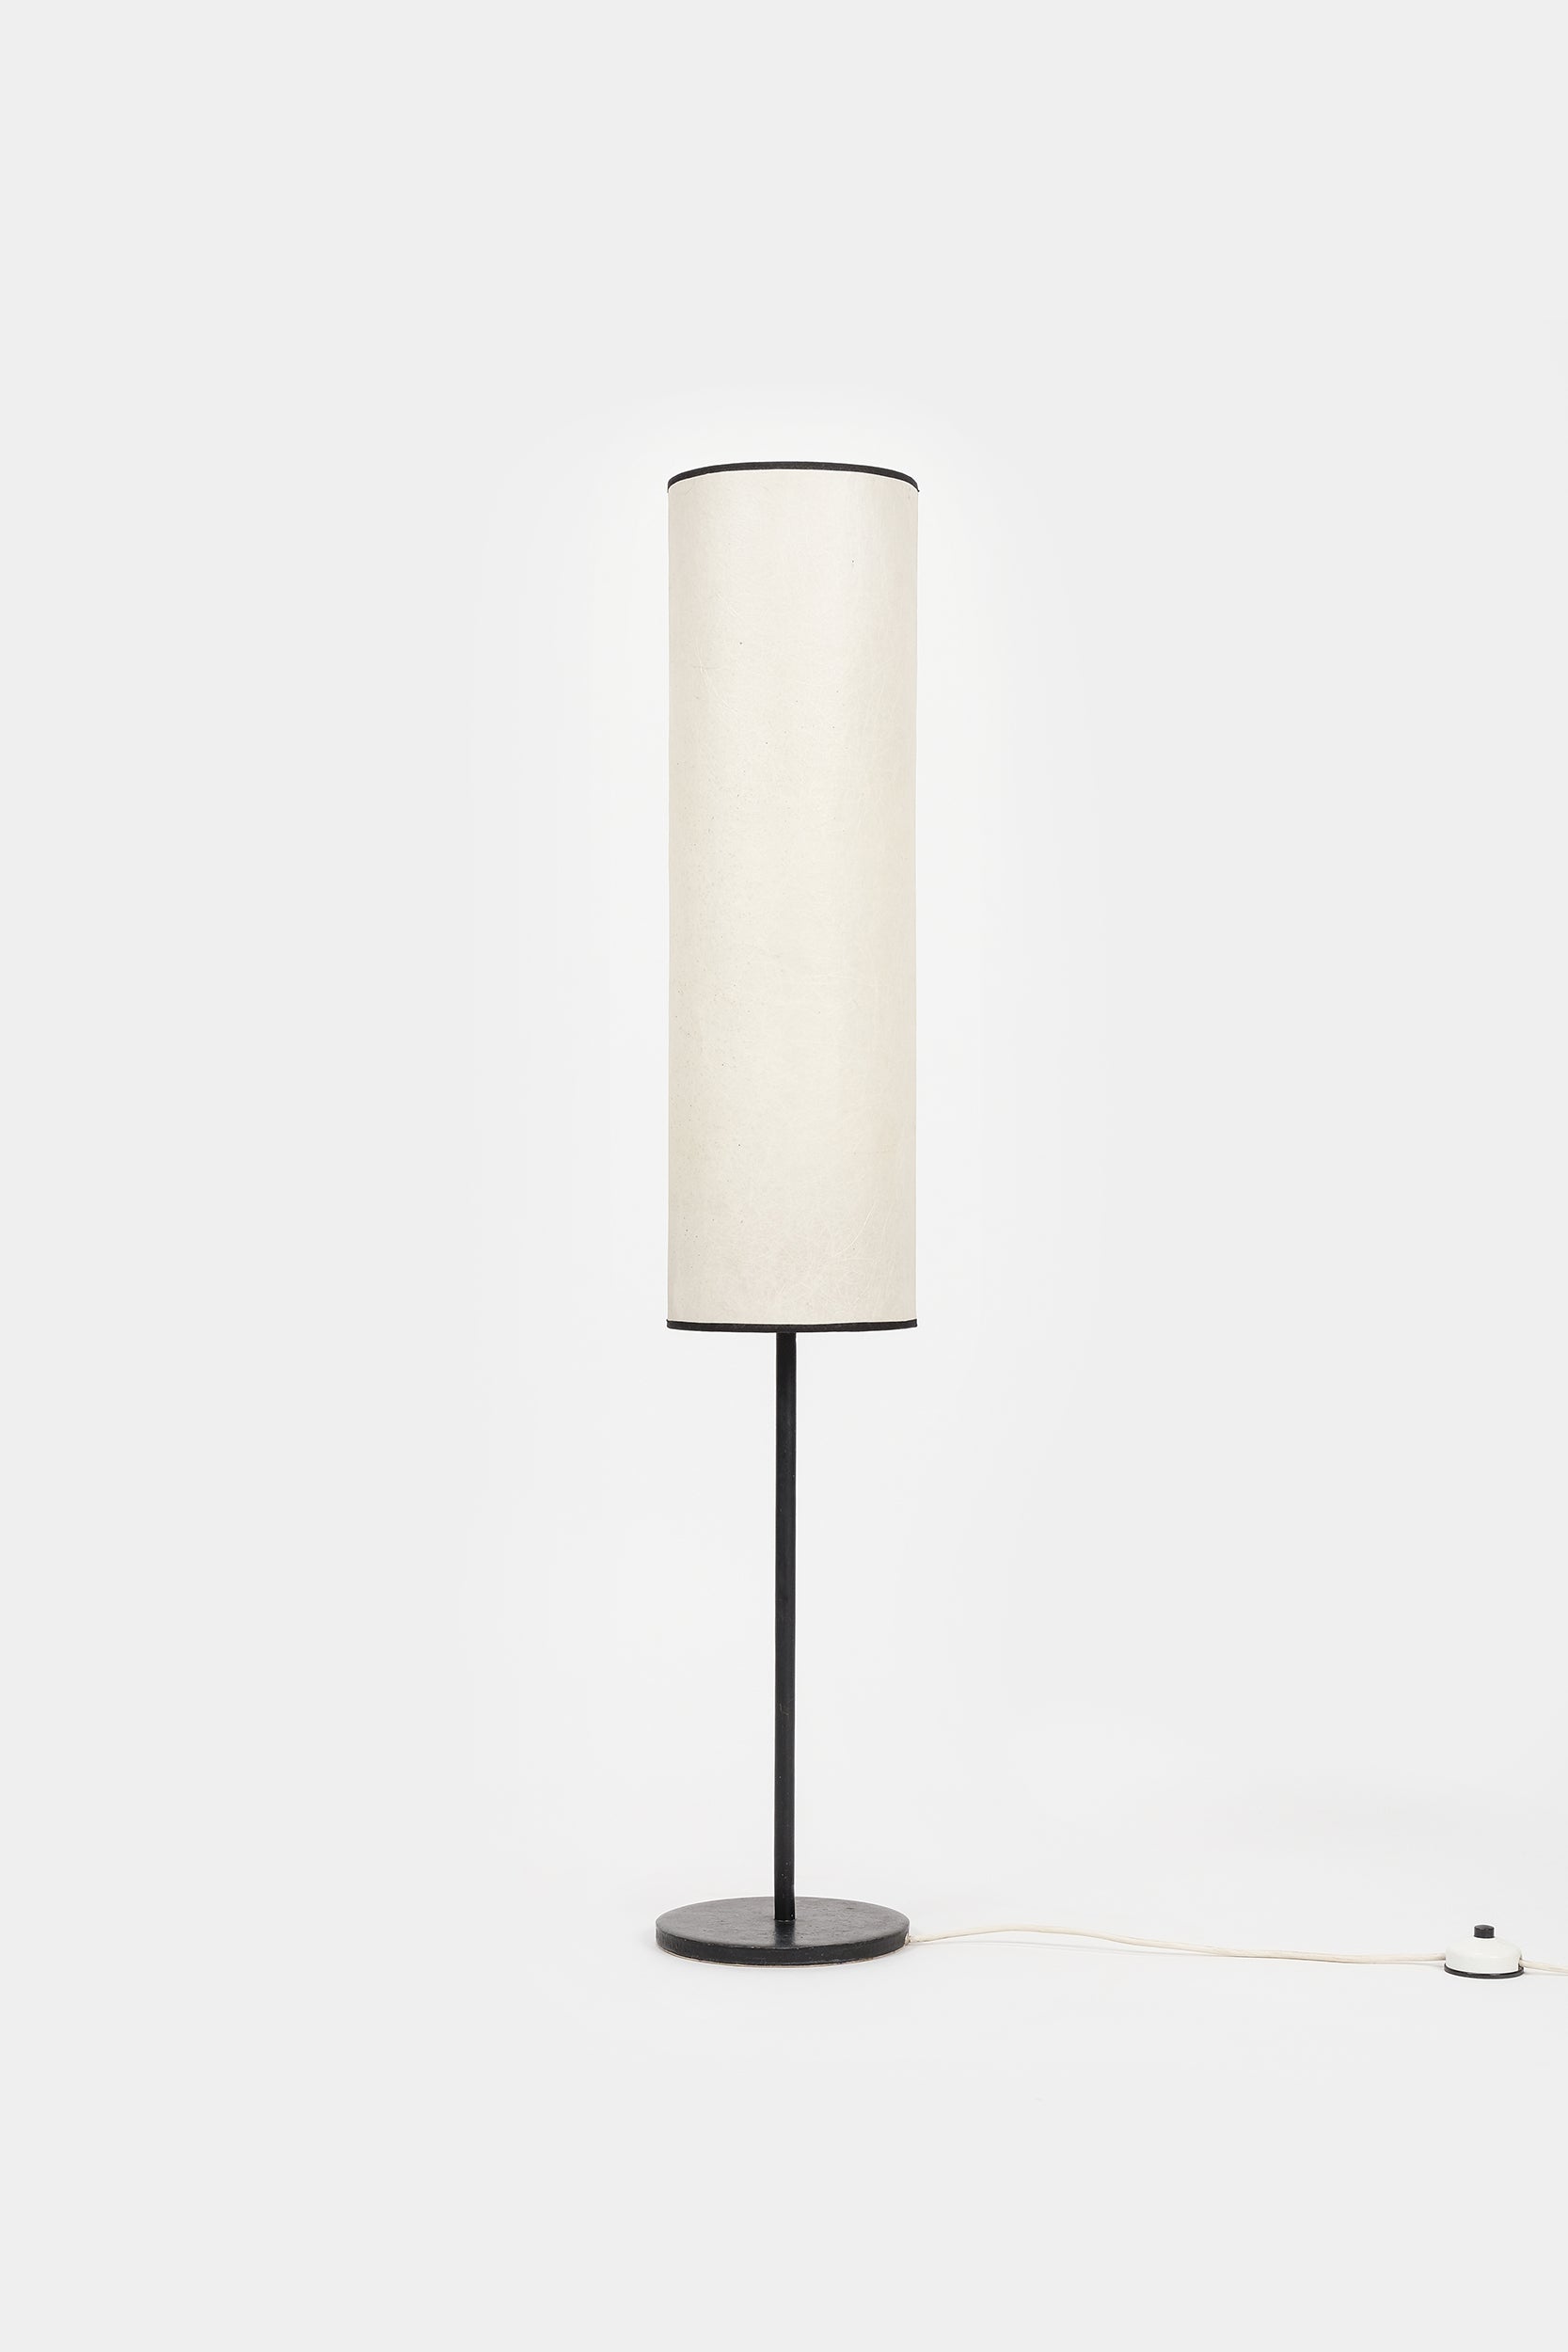 Tubus Floor Lamp, Cast Iron, Switzerland, 60s